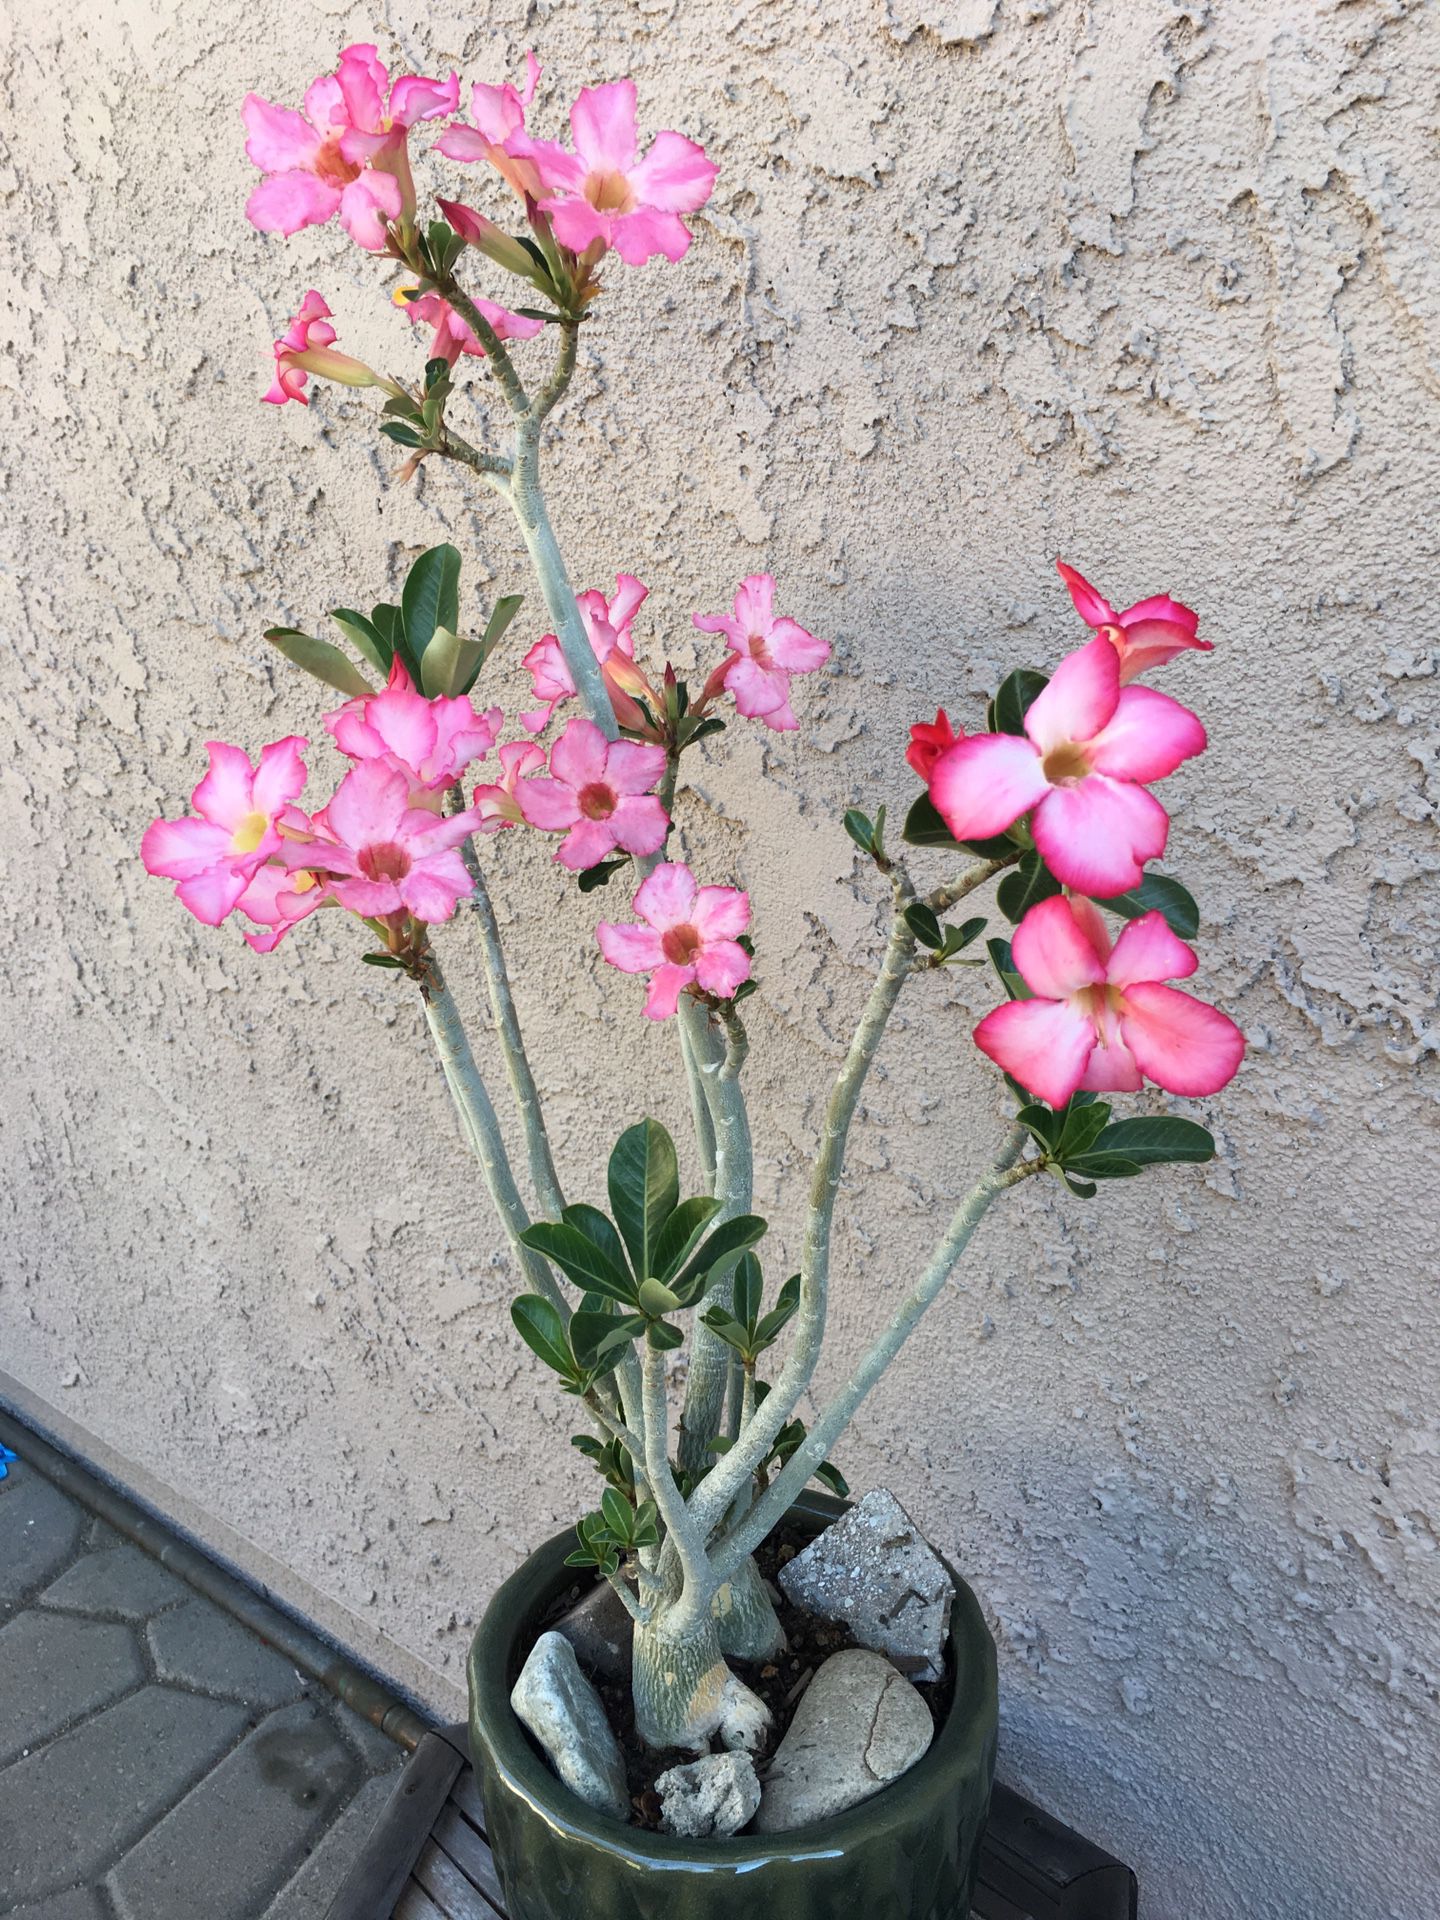 Beautiful desert rose in a ceramic pot